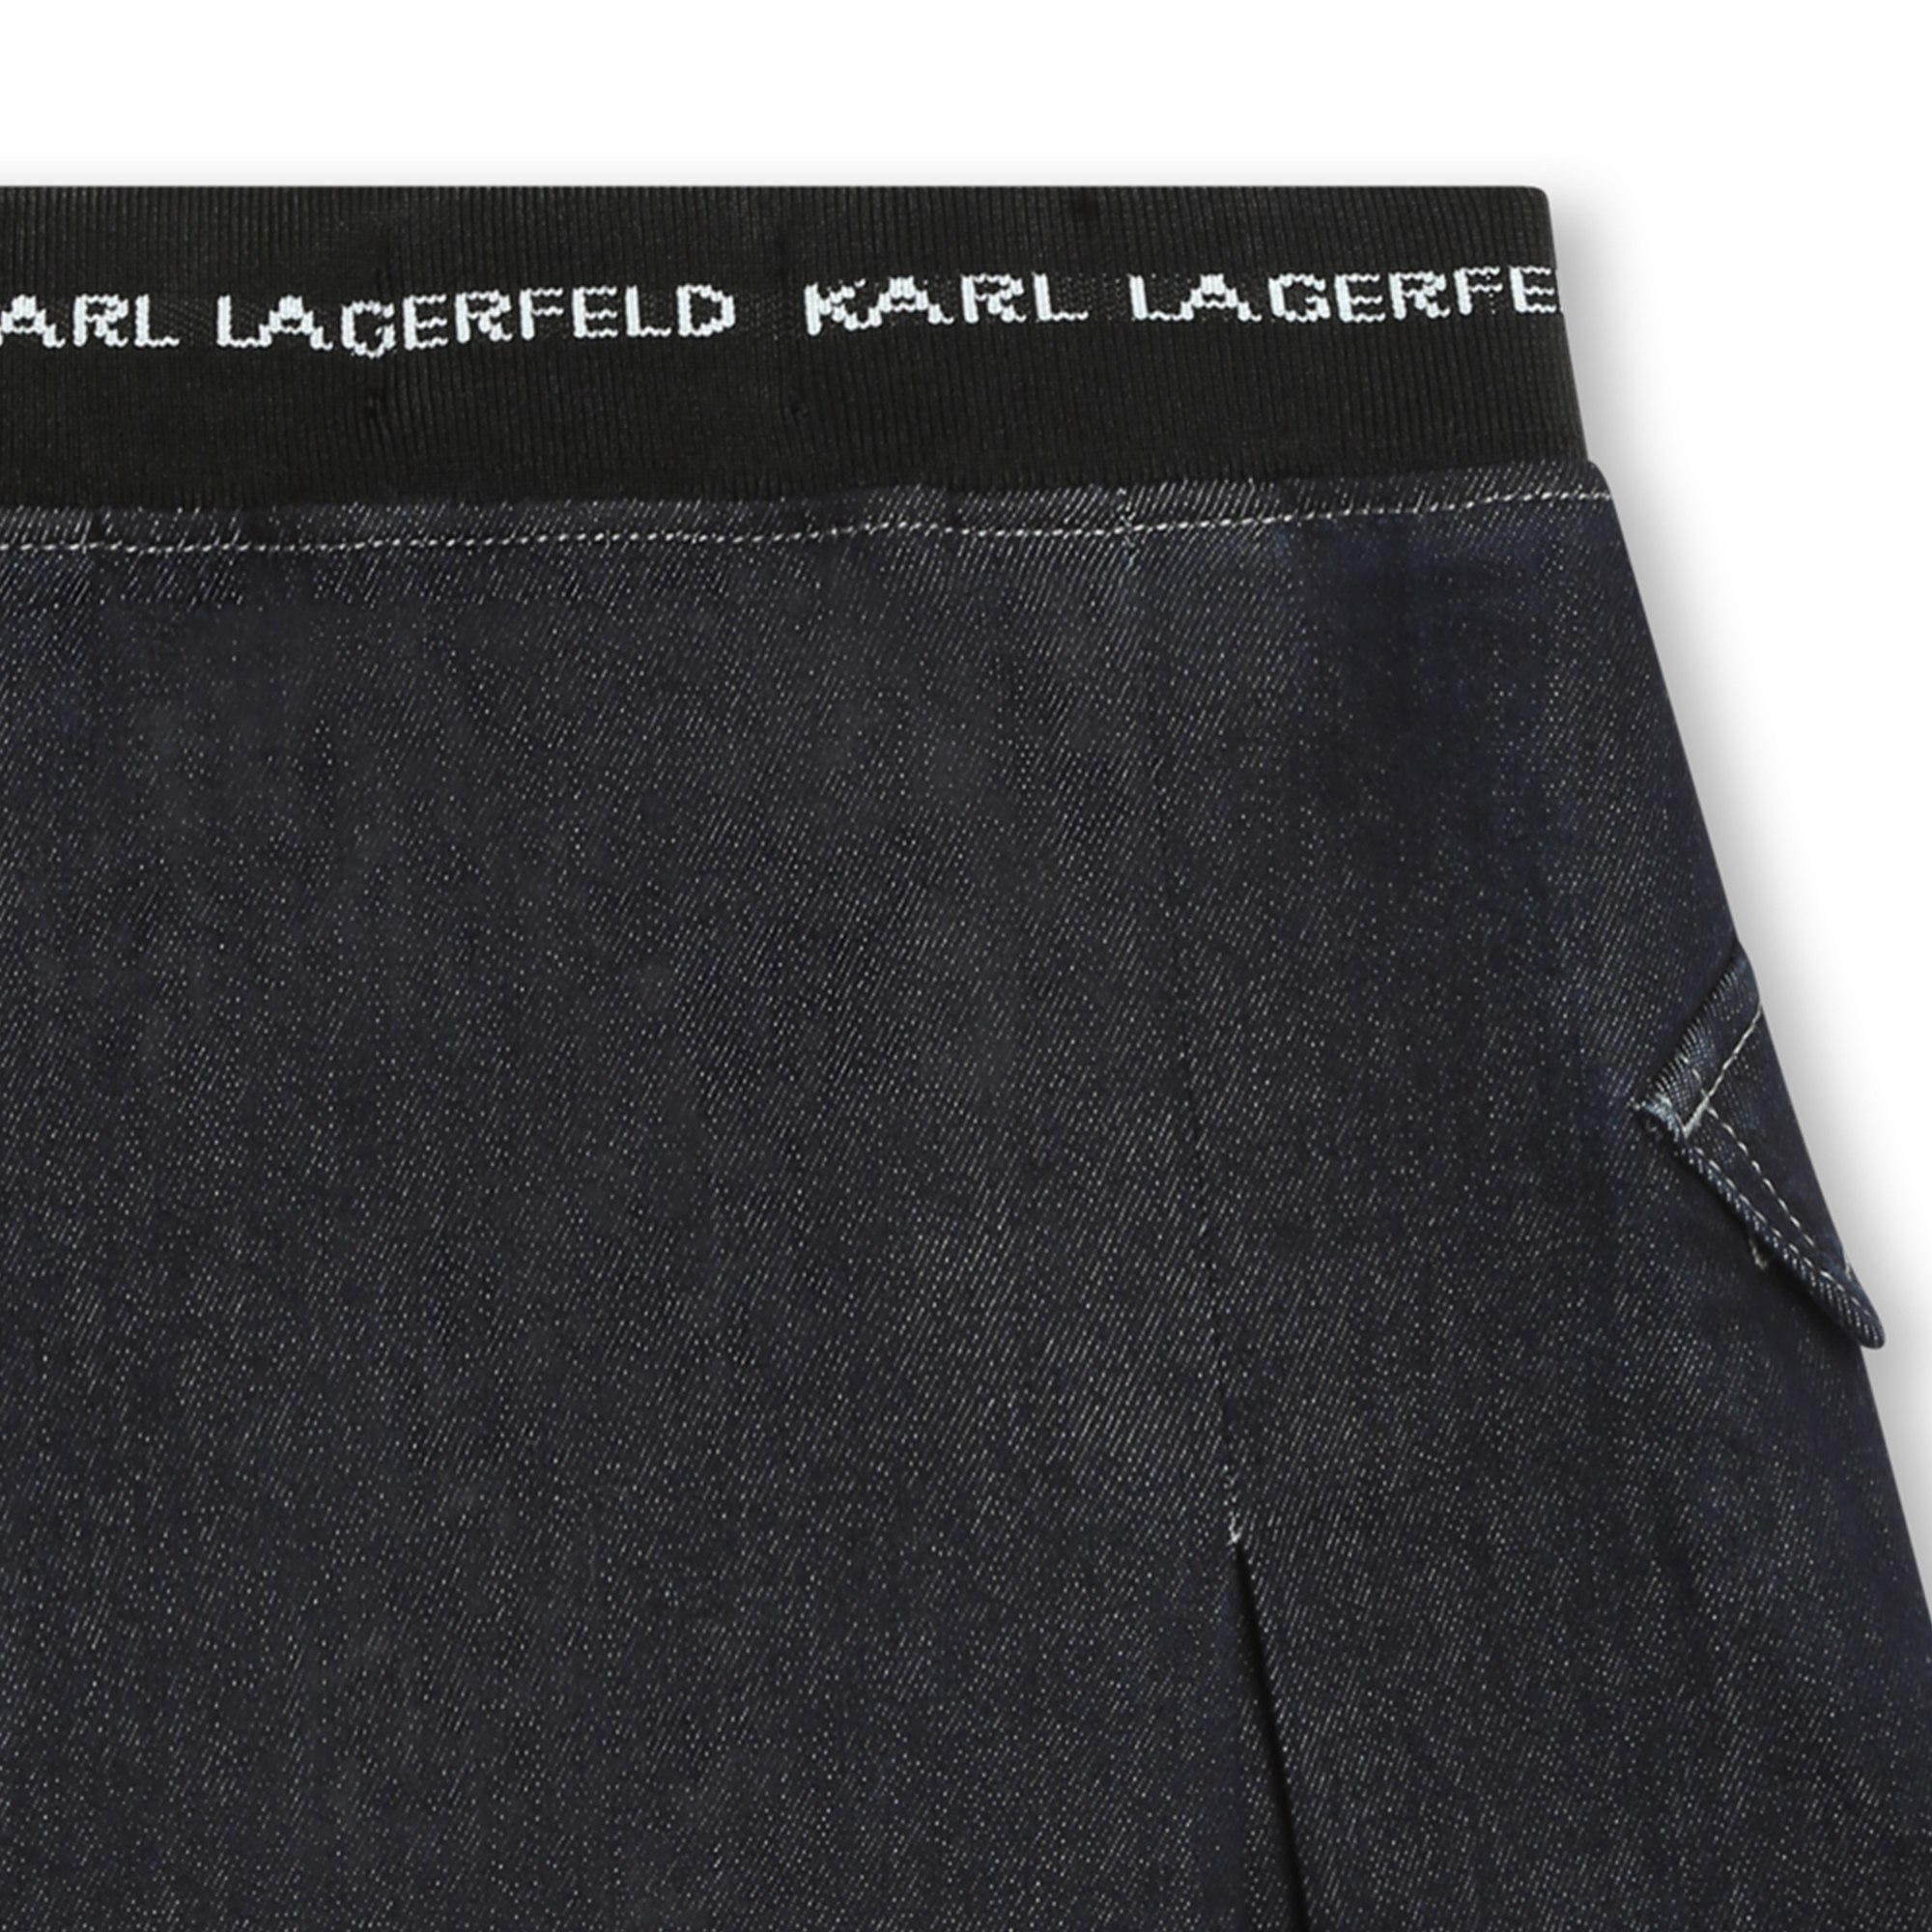 Short cotton denim skirt KARL LAGERFELD KIDS for GIRL